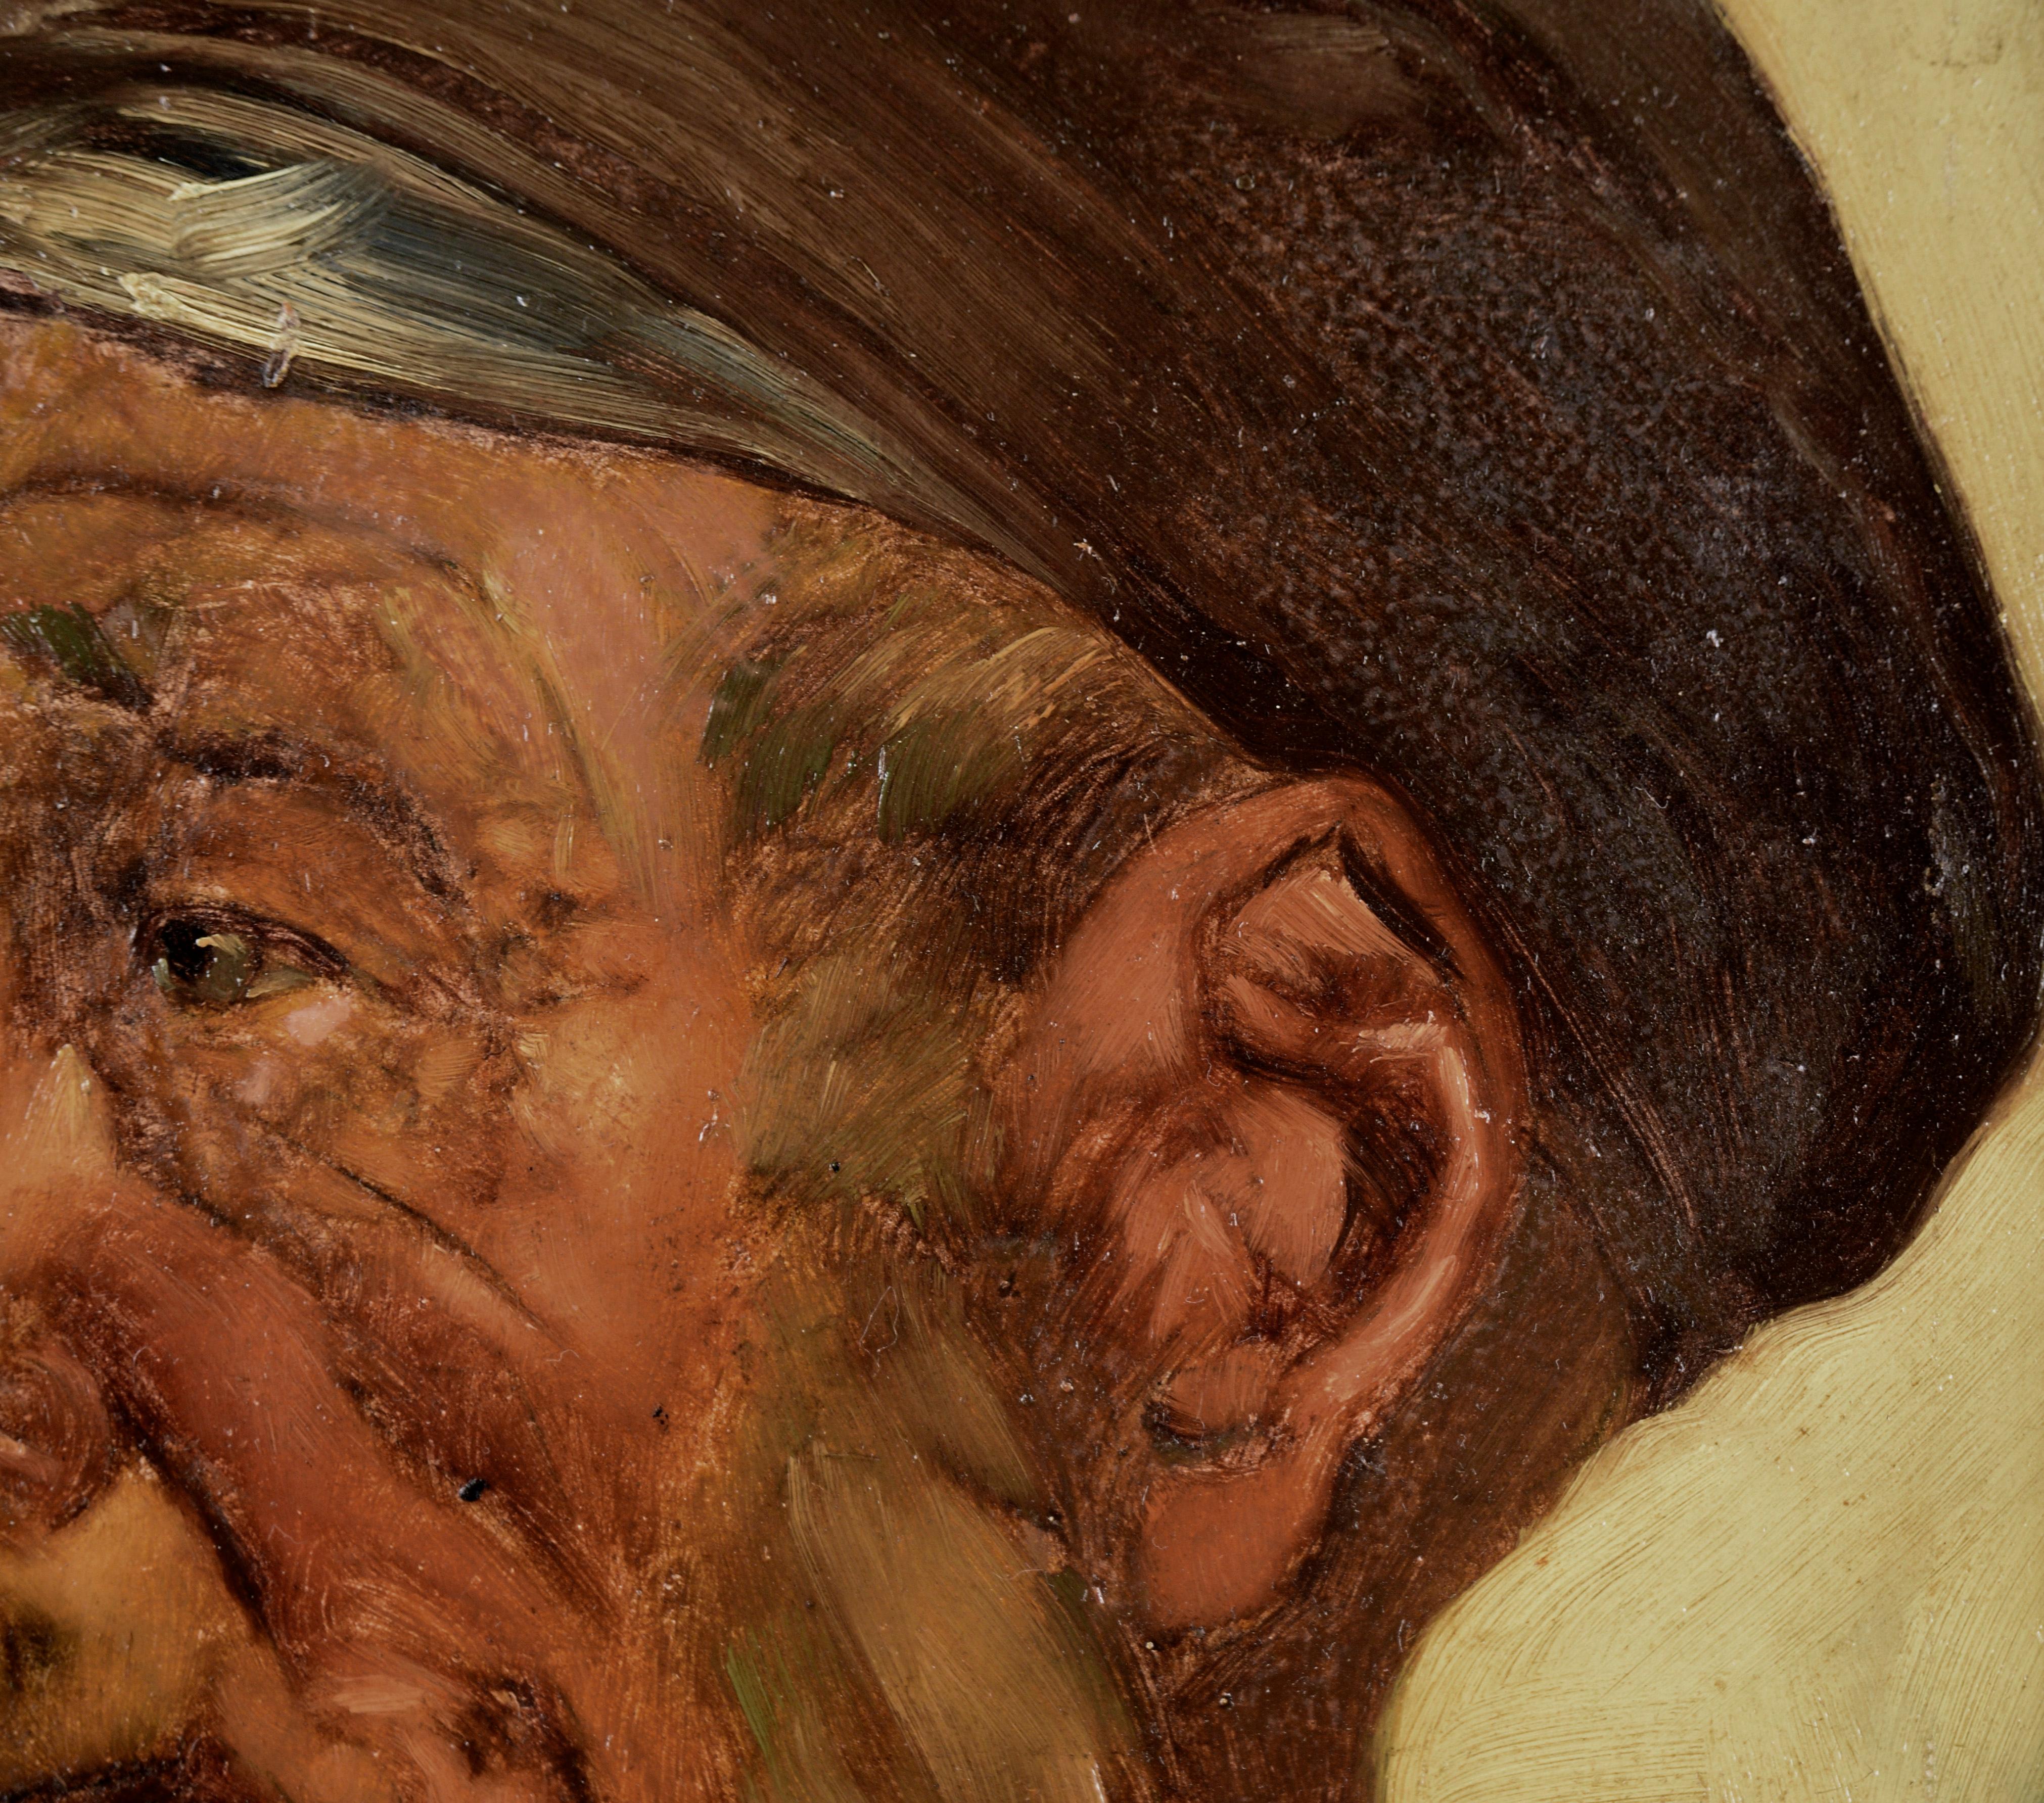 Portrait d'un homme fumant la pipe à l'huile sur Masonite

Portrait détaillé d'un homme à la pipe par Heinz Robert Schubert (allemand, 1912-2001 env.). Un homme portant un chapeau à bords courts regarde vers la gauche, une pipe à la bouche. Il est